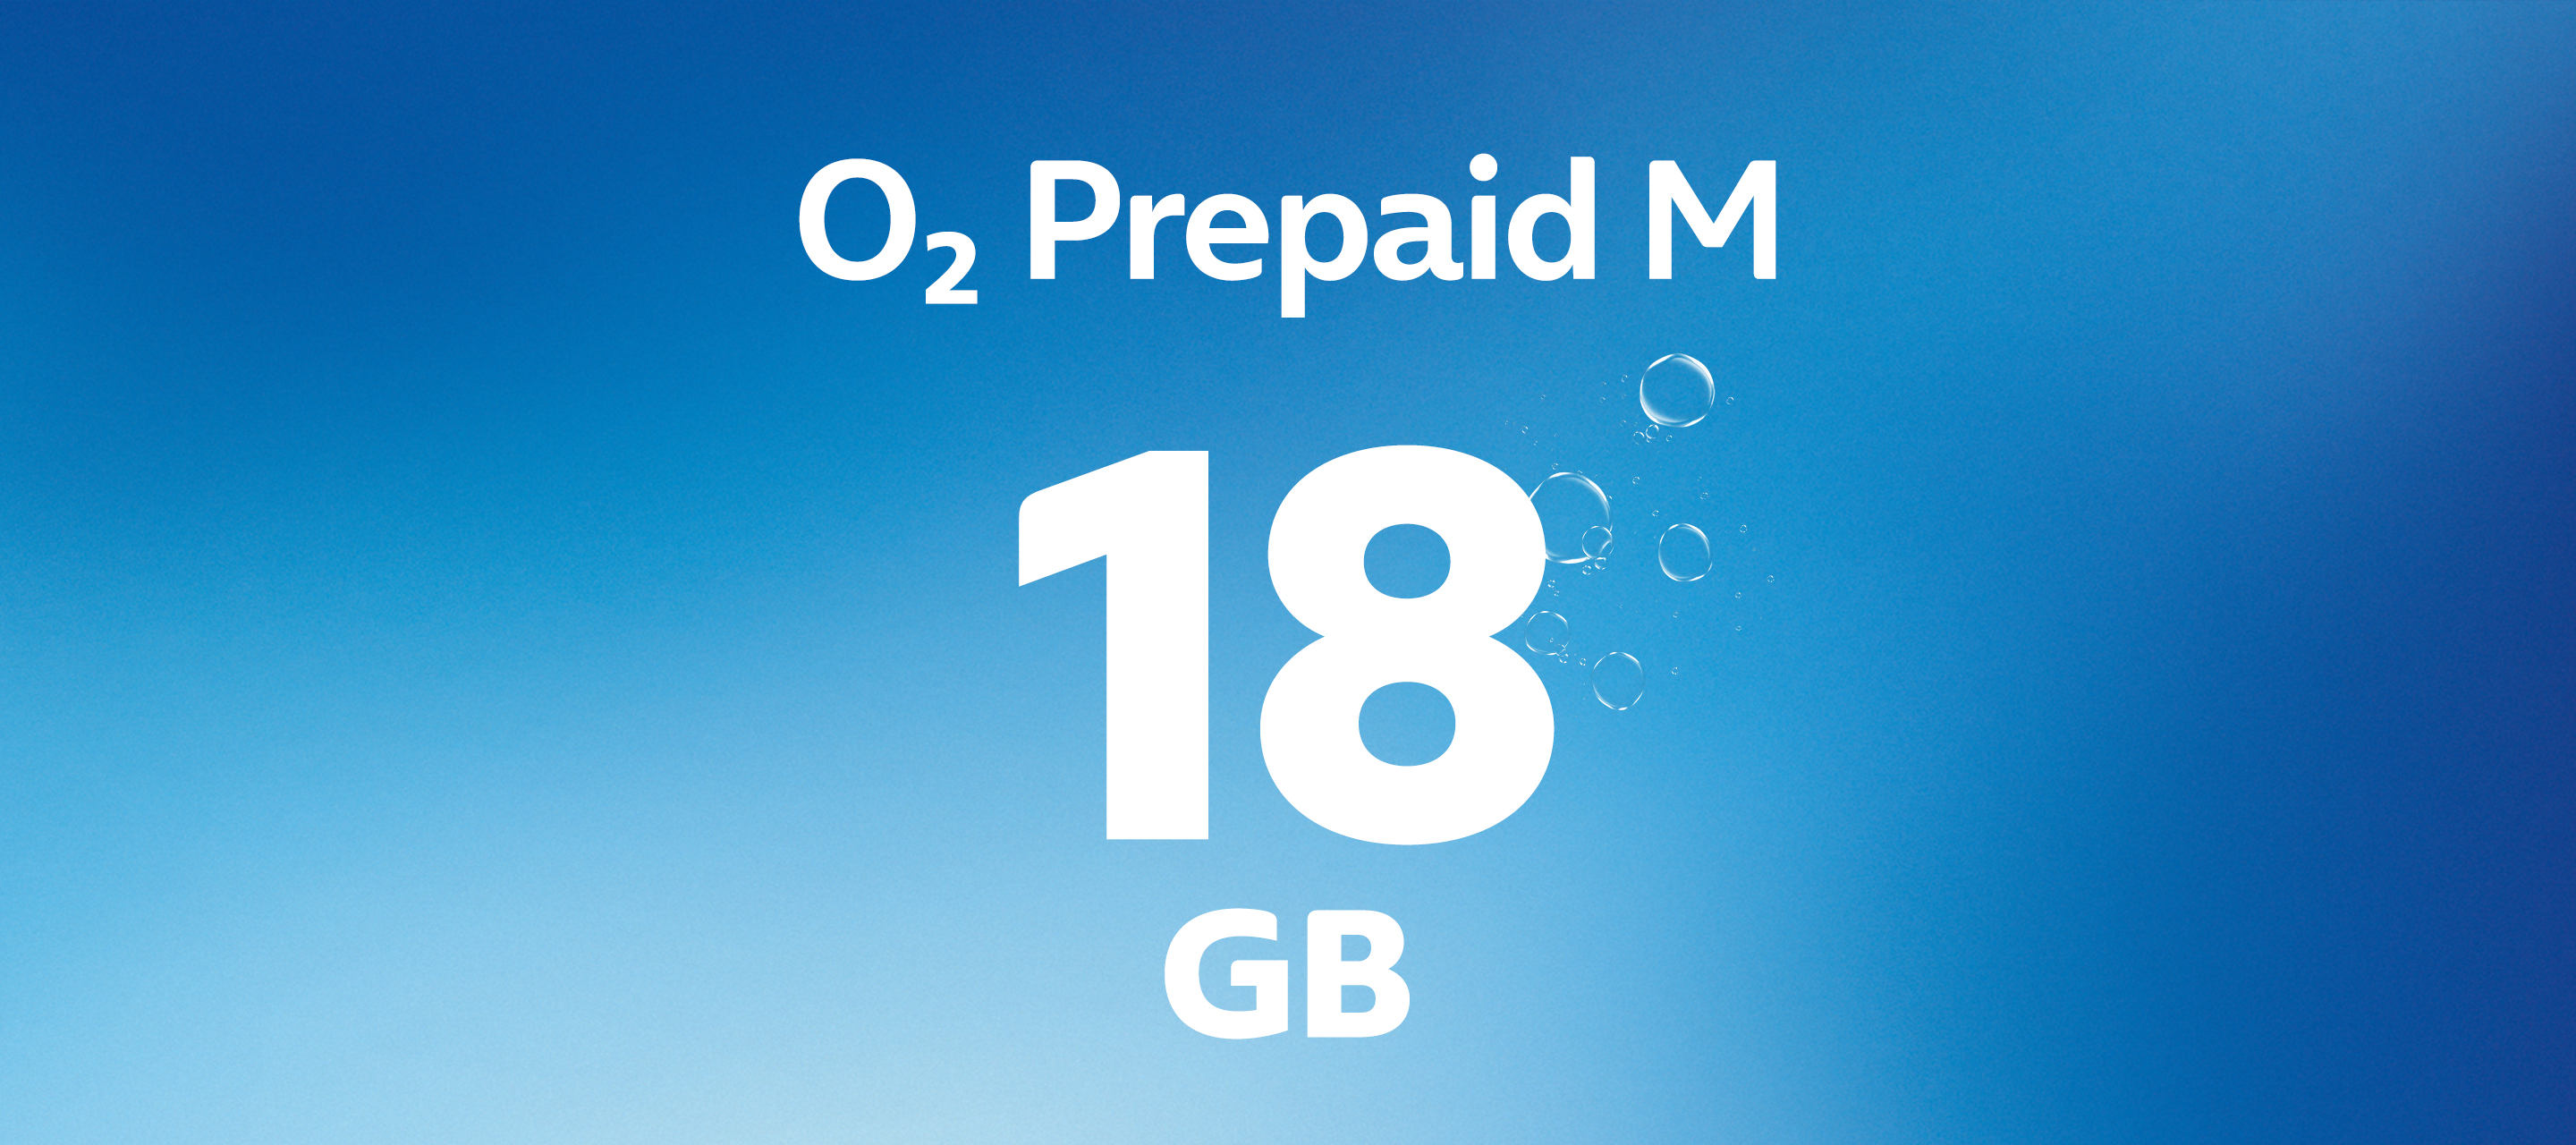 O₂ Prepaid M mit 18GB - Jetzt auch im 5G-Netz